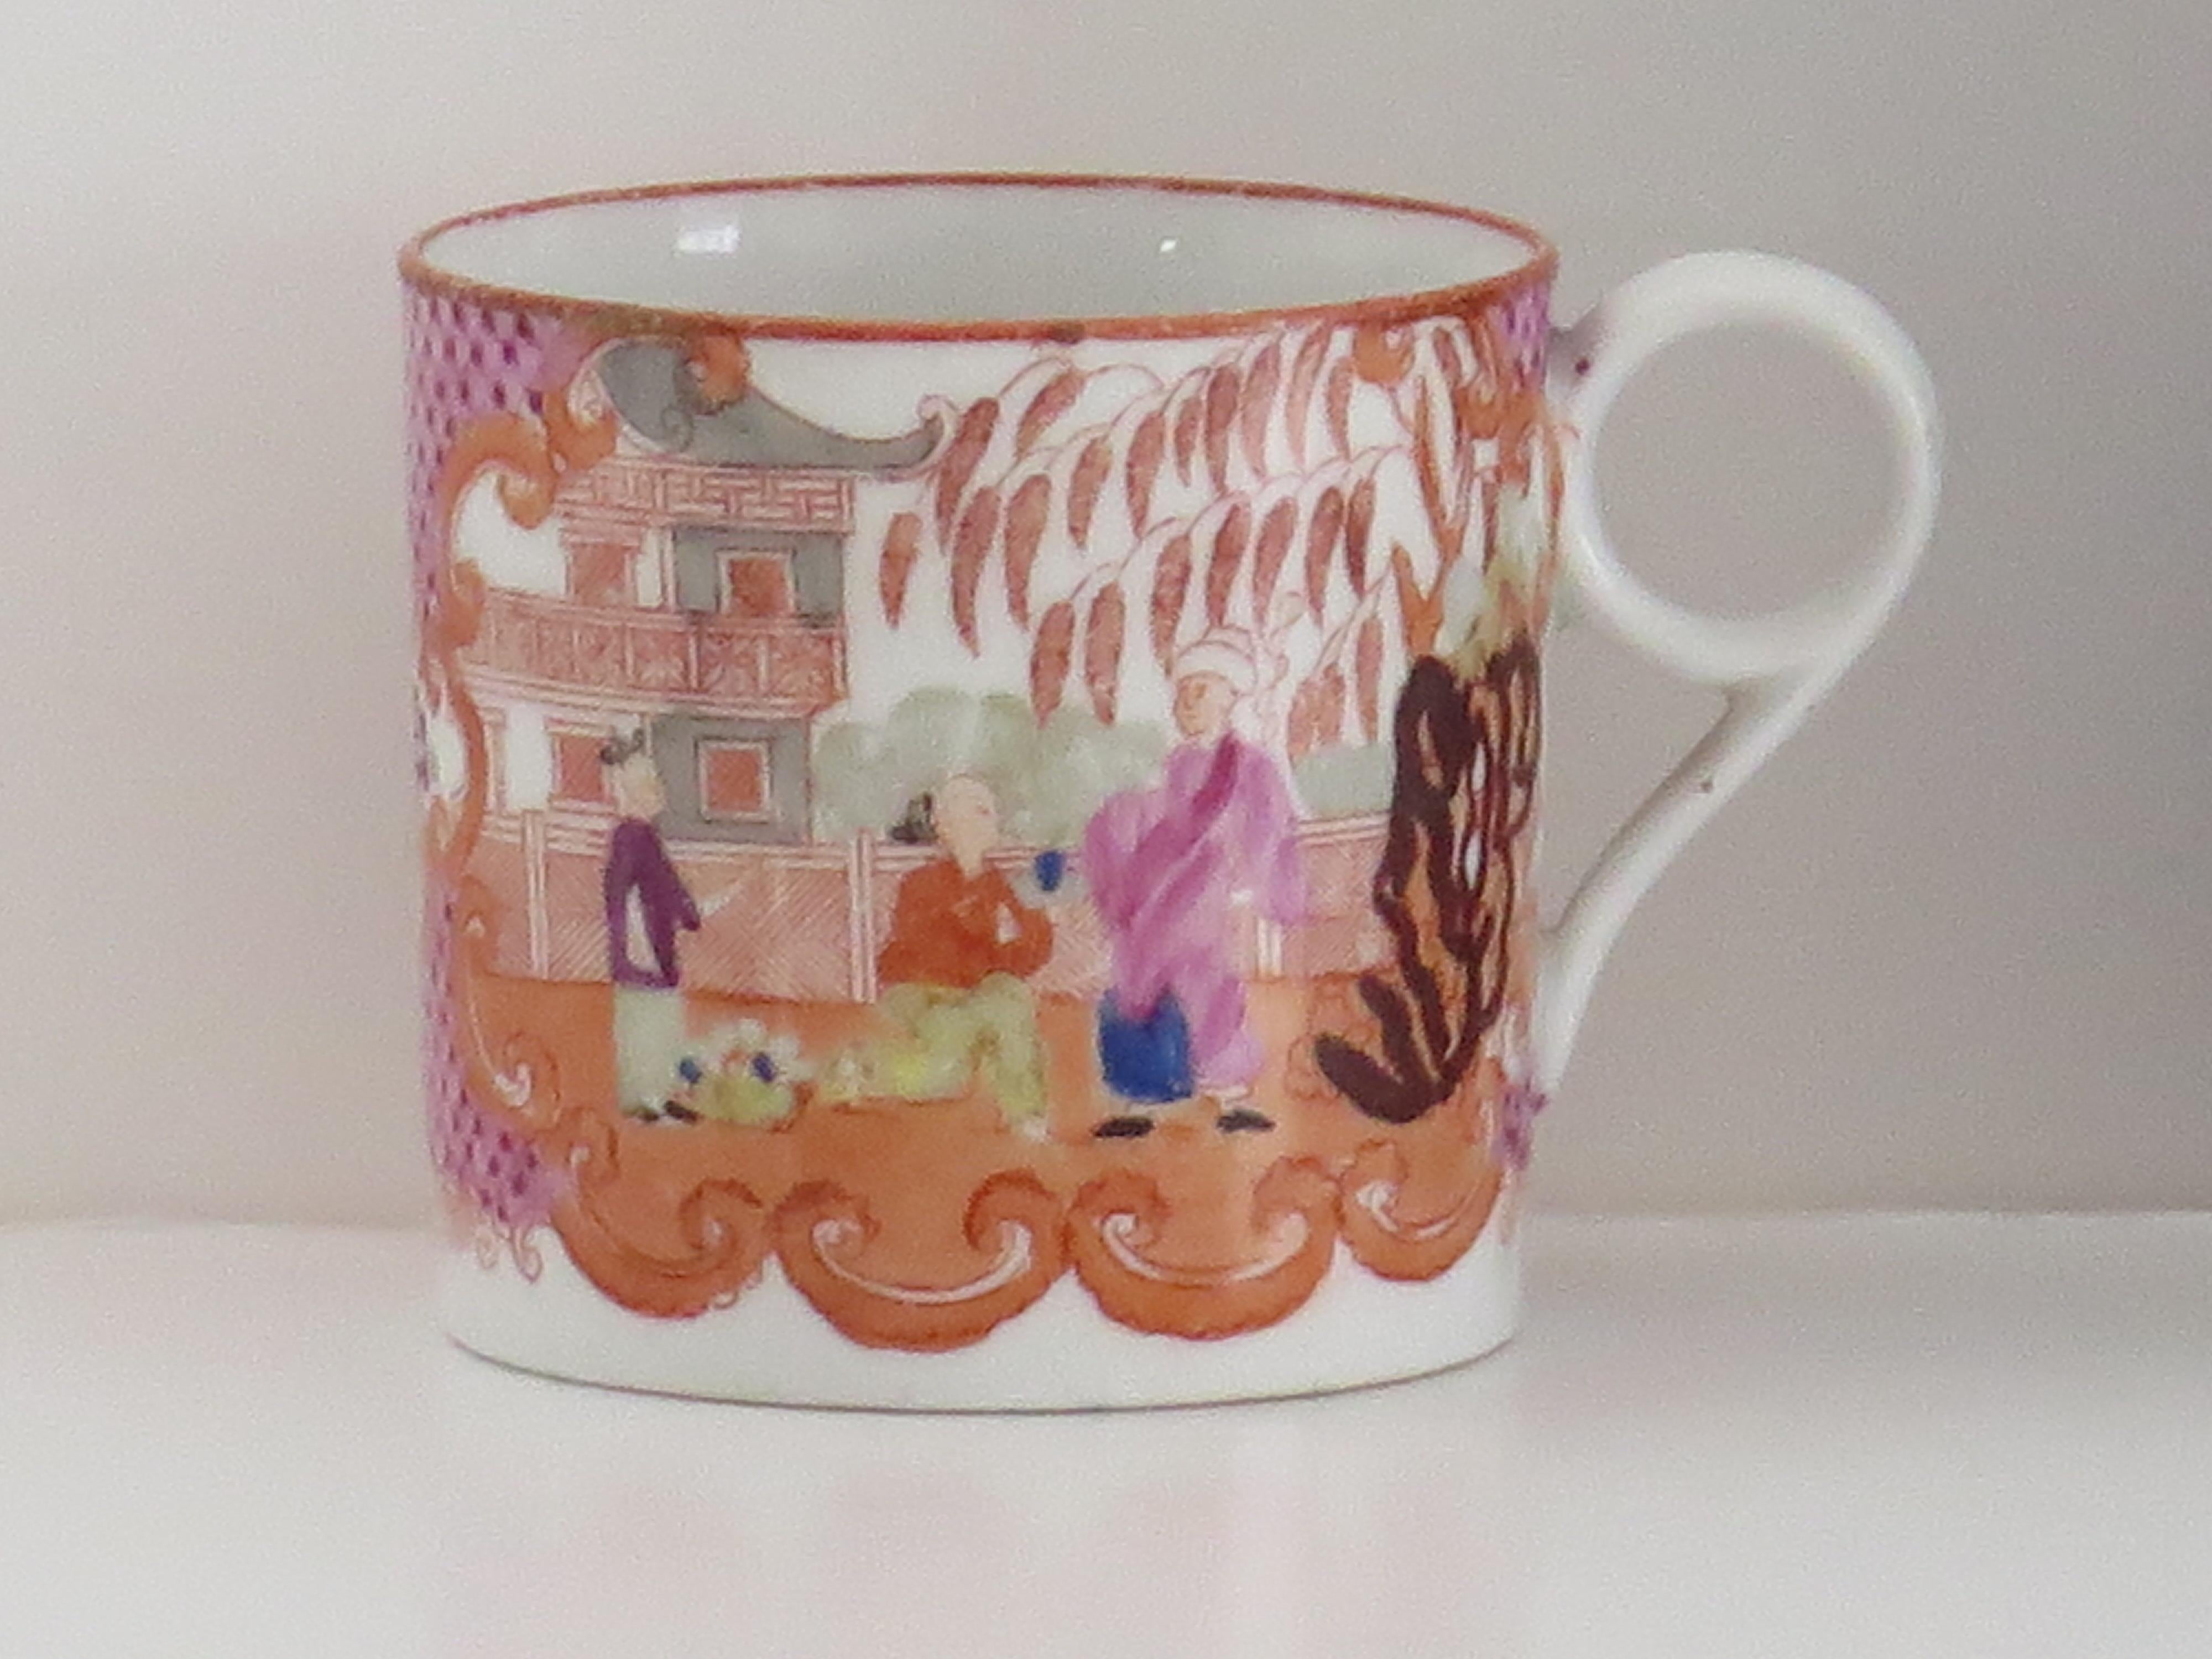 Il s'agit d'une boîte à café ou d'une tasse en porcelaine de Machin présentant un très beau motif de Chinoiserie et datant du tout début du XIXe siècle, fin de la période géorgienne.

Cette boîte à café a des côtés nominalement parallèles et une